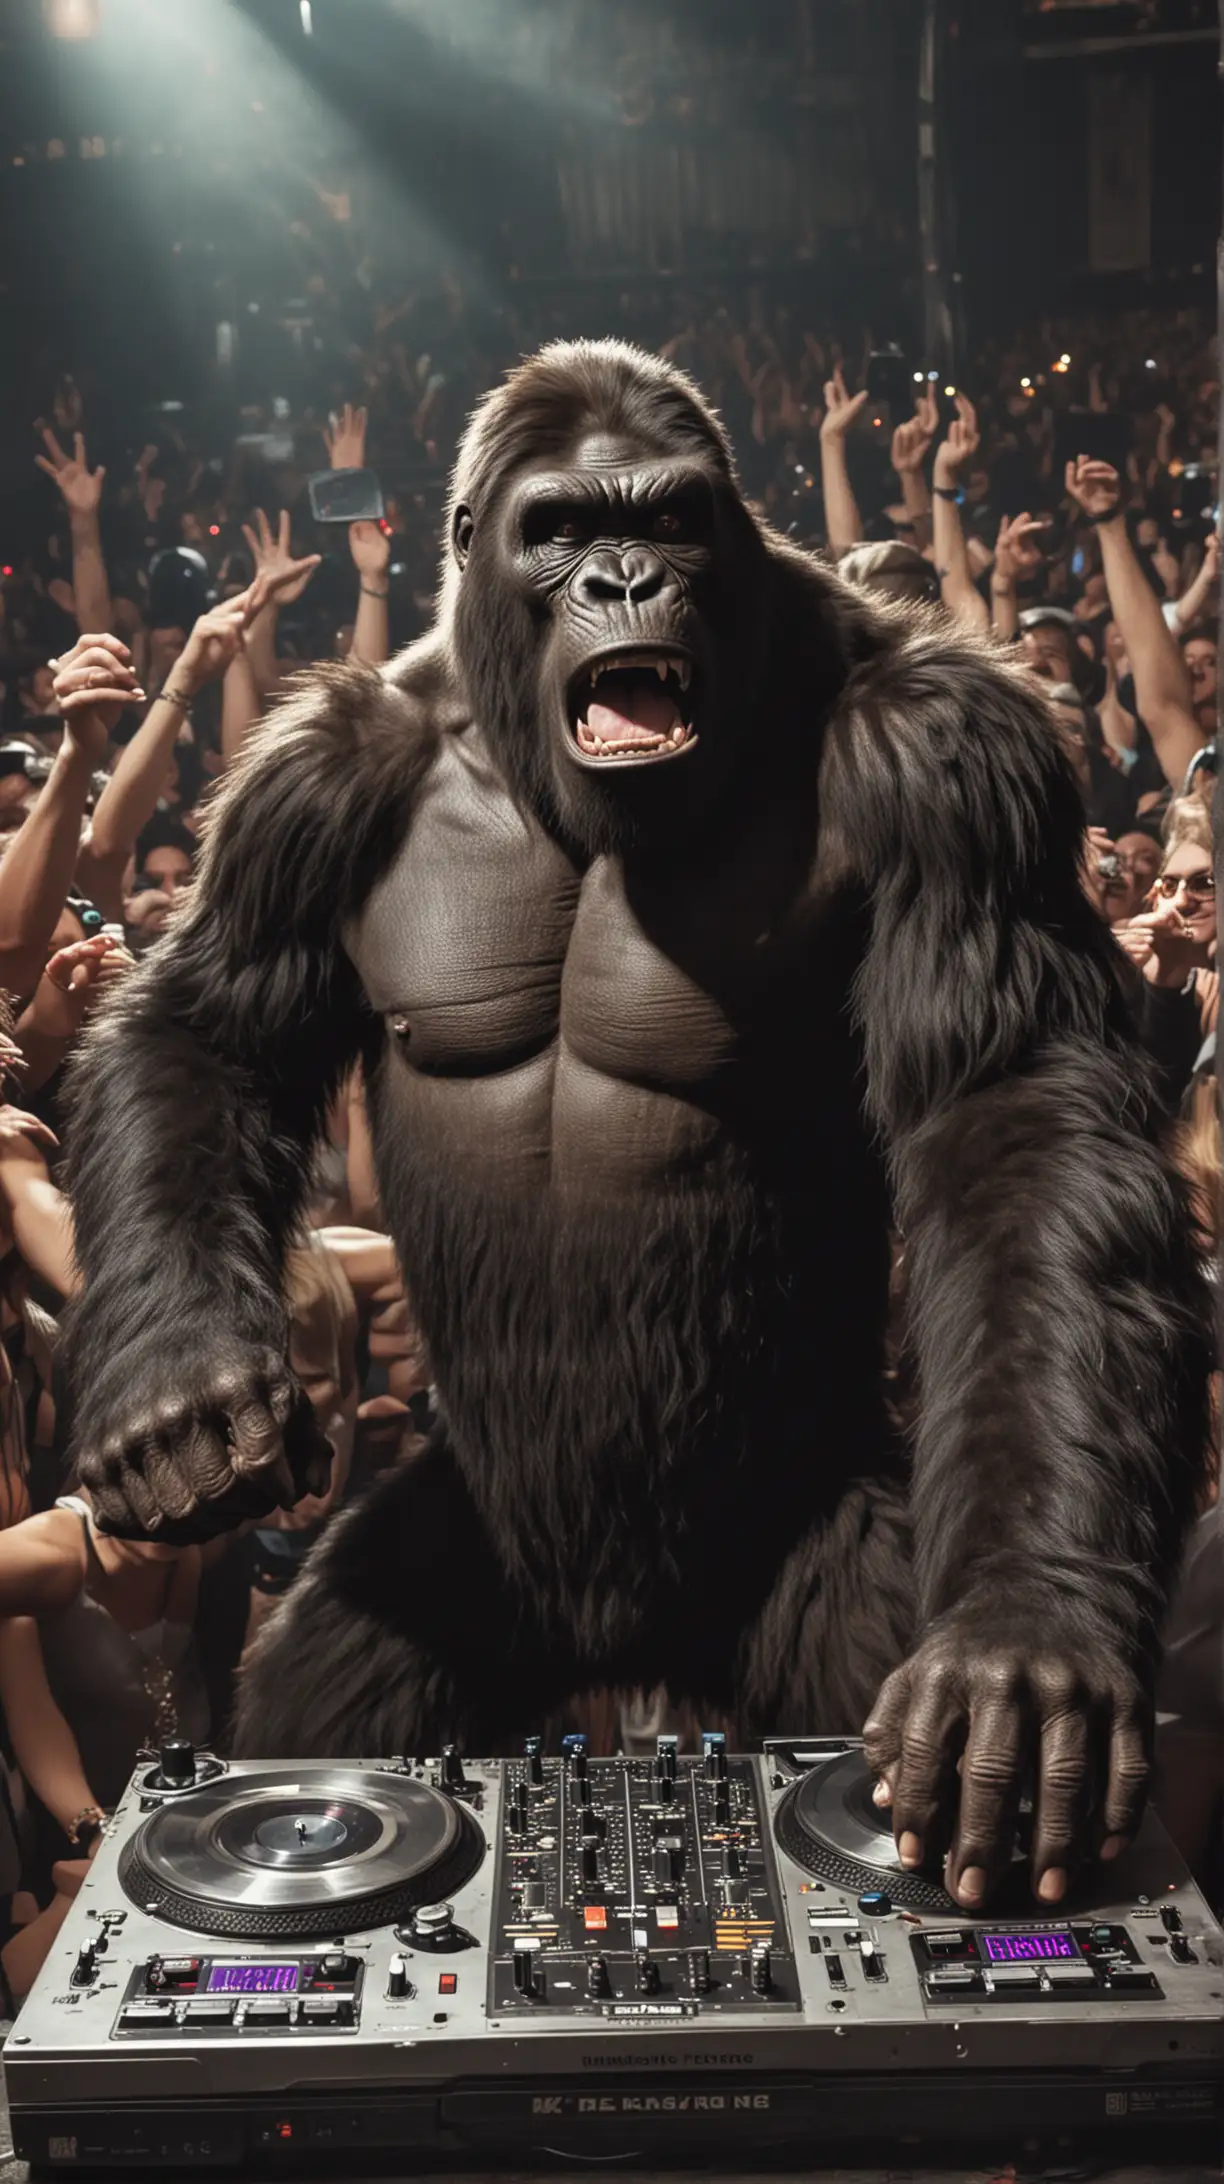 King Kong DJing a dance party